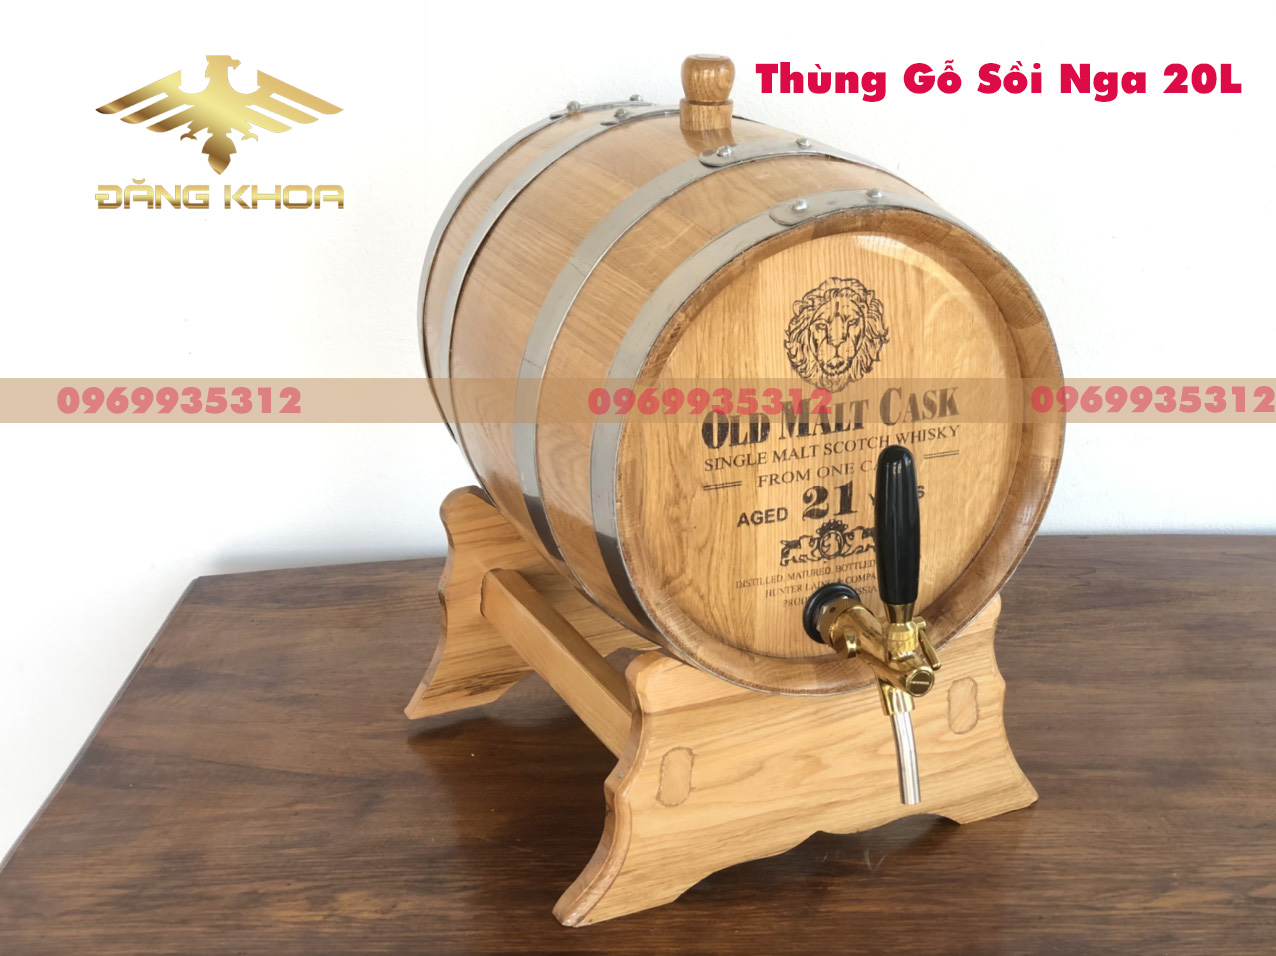 Mua bán thùng gỗ sồi tại Quảng Ninh - Đơn vị nào cung cấp thùng gỗ sồi uy tín?